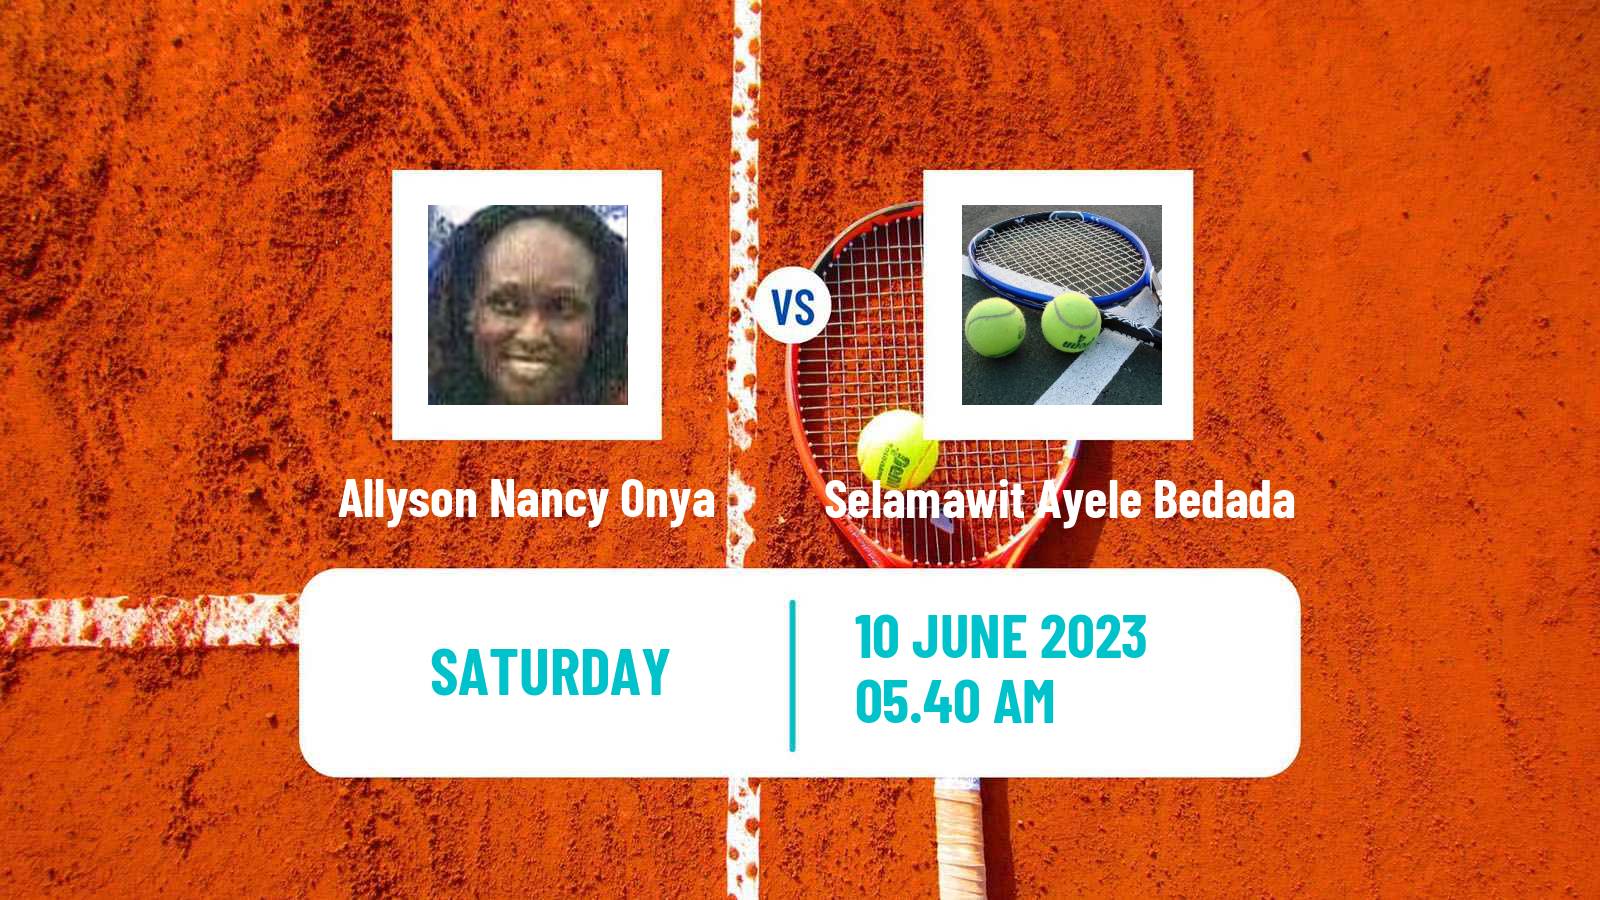 Tennis WTA Billie Jean King Cup Group IV Allyson Nancy Onya - Selamawit Ayele Bedada